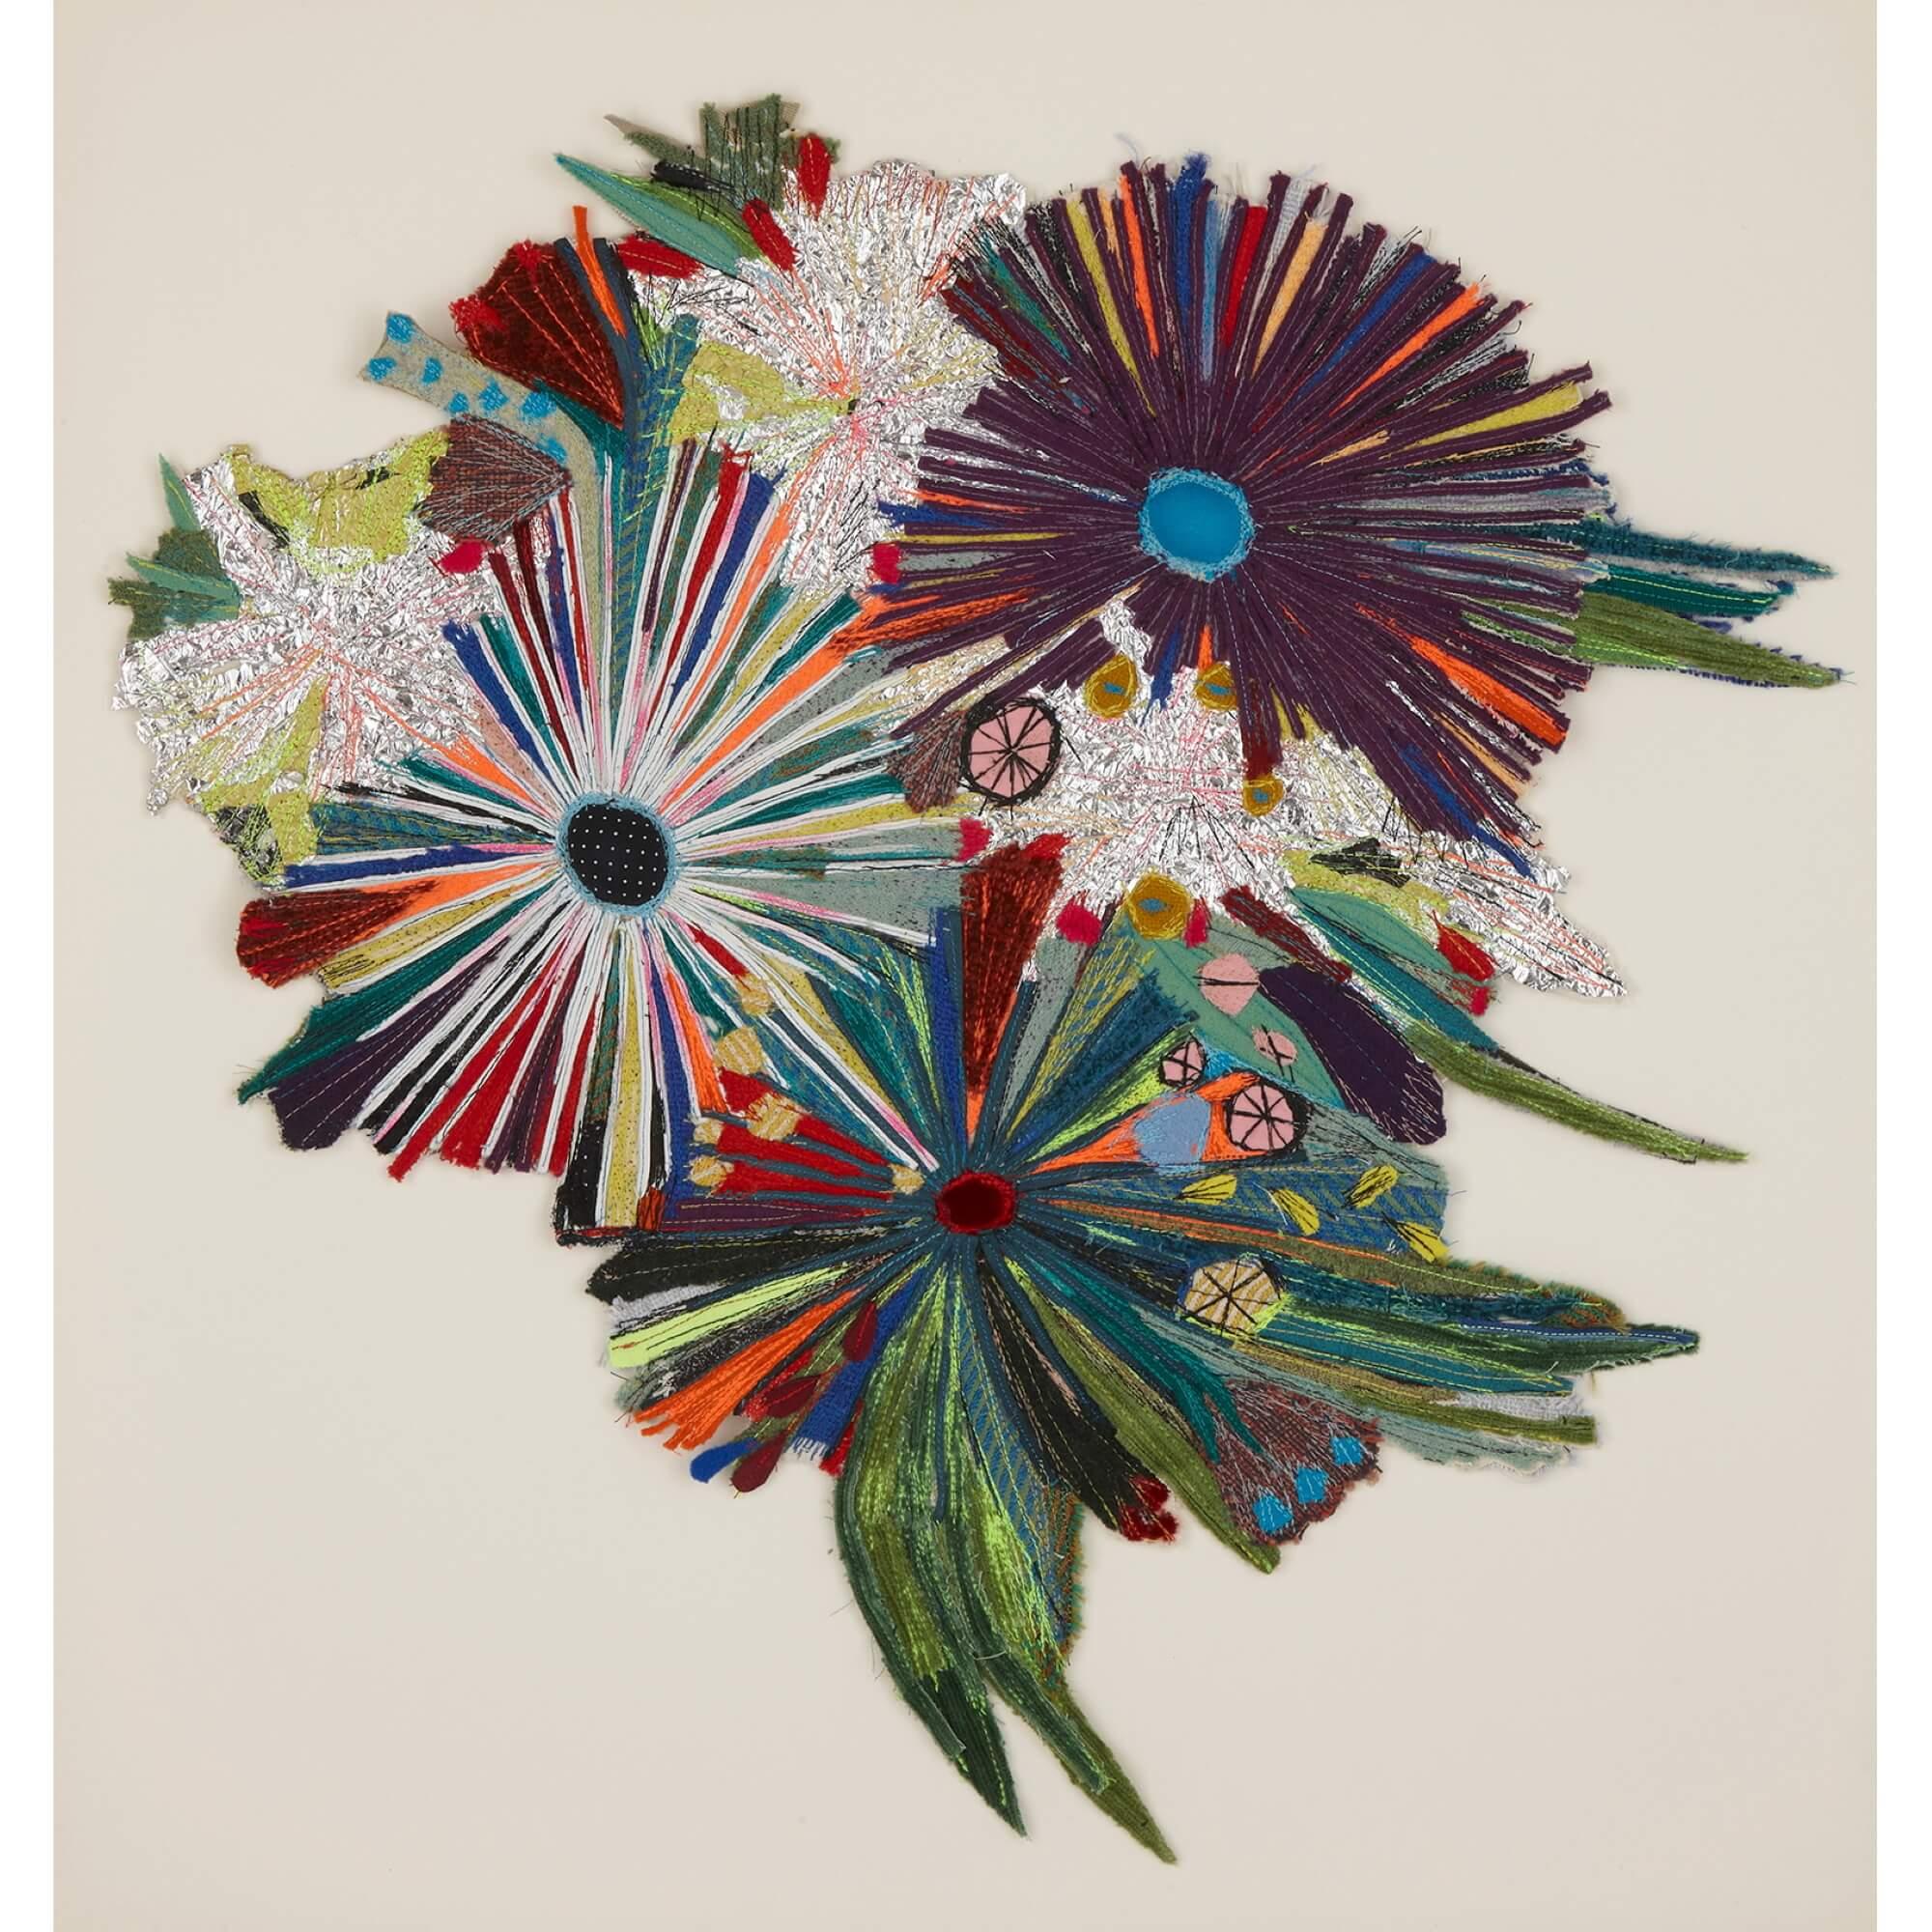 Recyceltes Textilpaneel mit Blumen von Elodie Blanchard 
Amerikanisch, 2022
Höhe 70cm, Breite 64,5cm, Tiefe 4cm 

Der Künstler verwendet eine Reihe von recycelten Materialien, die er in begehrenswerte und aufsehenerregende Kunstwerke